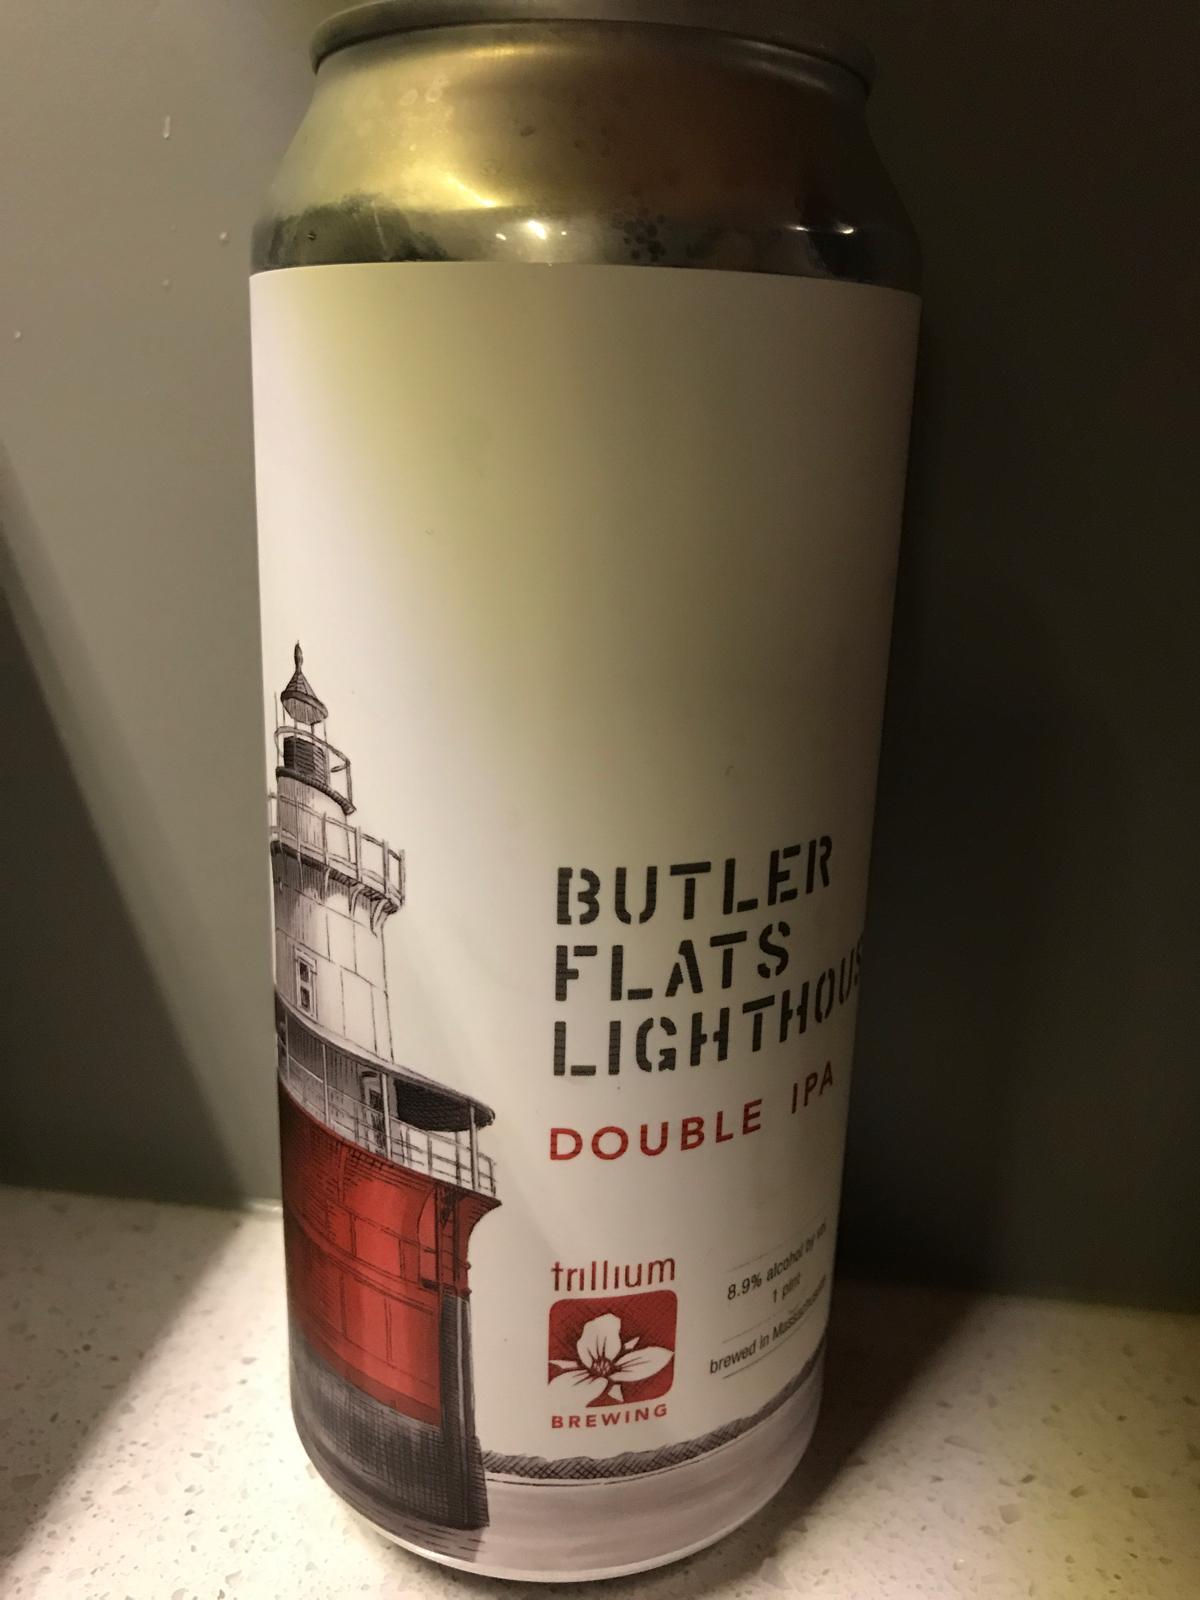 Butler Flats Lighthouse